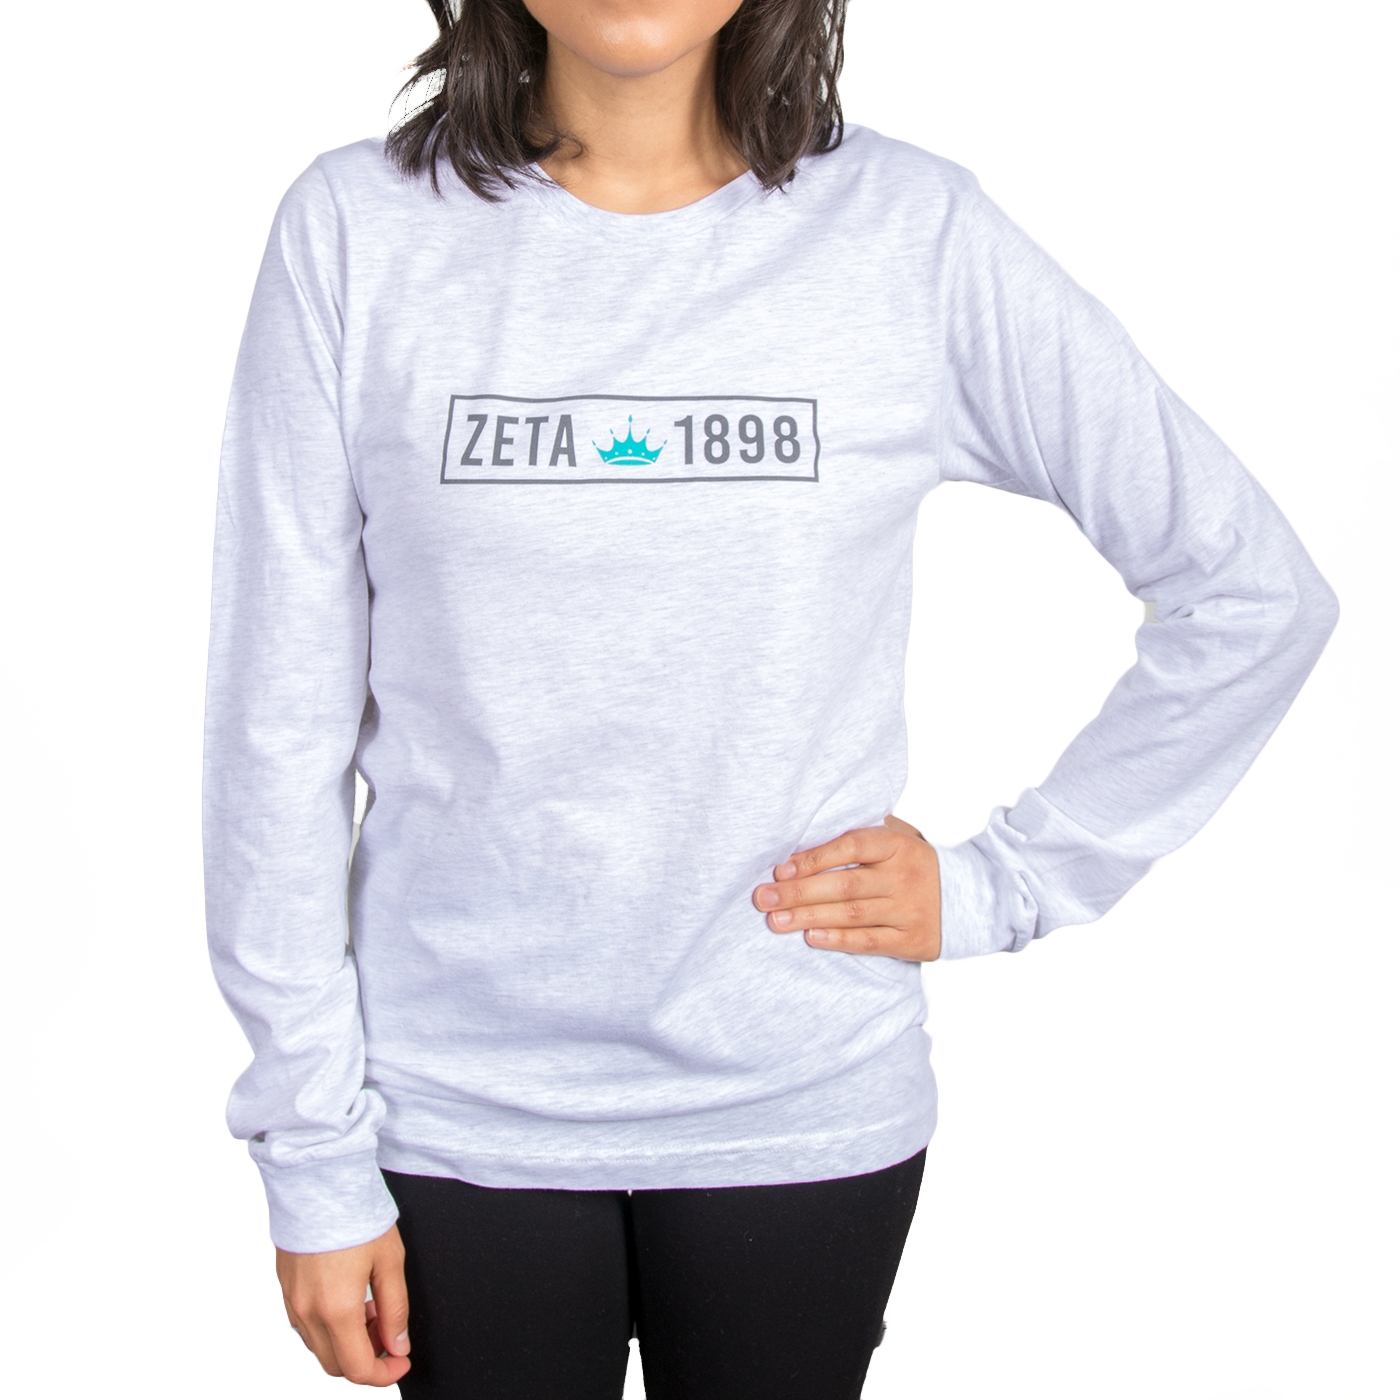 Zeta1898 Long Sleeve